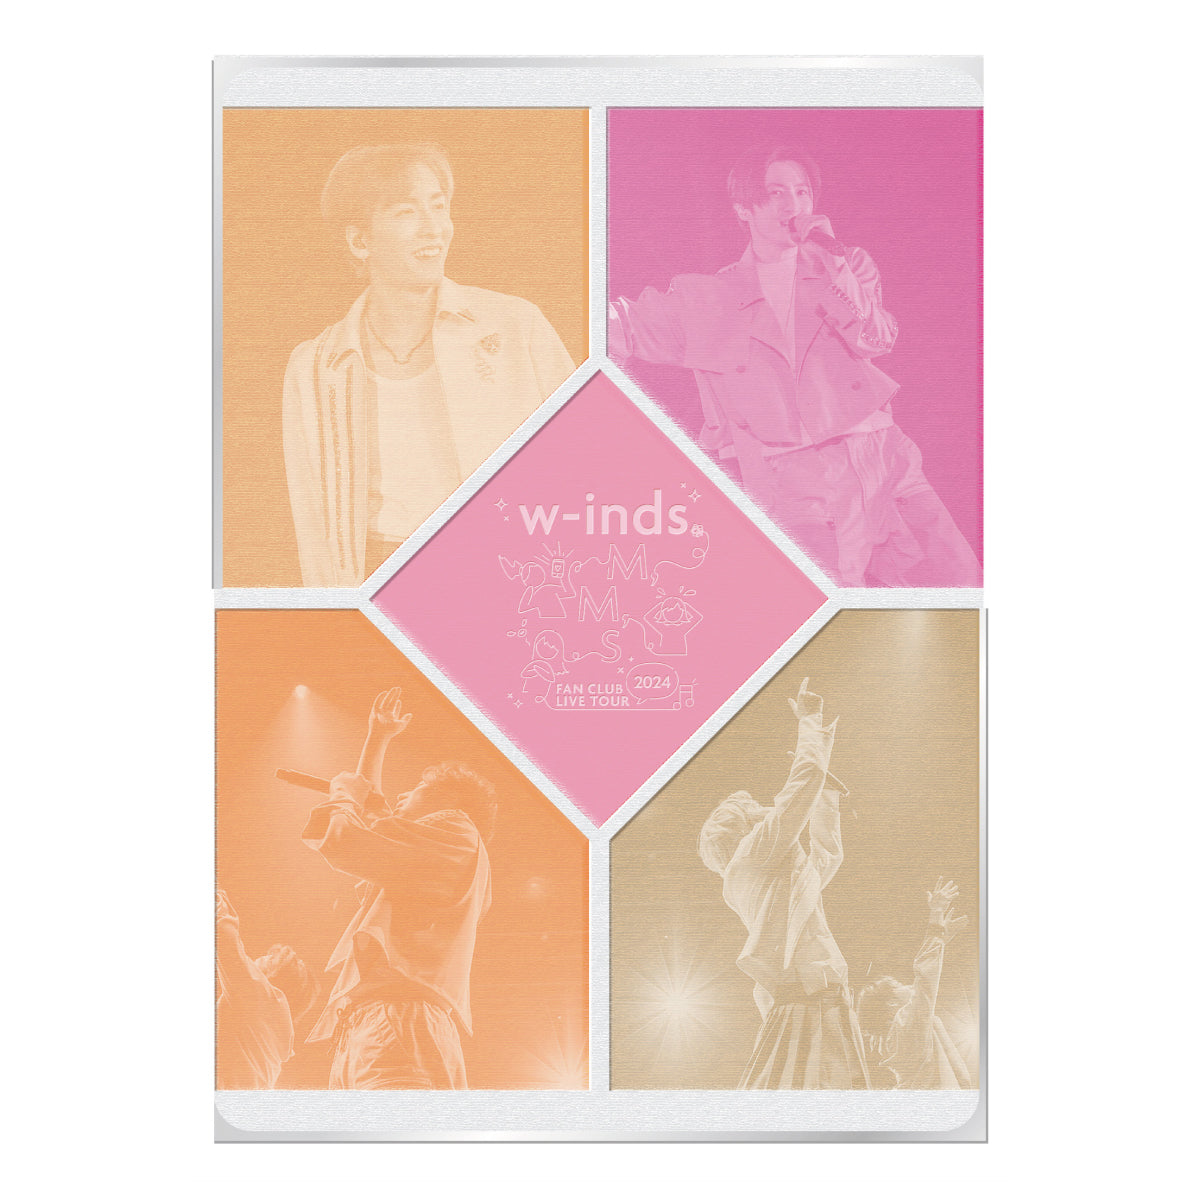 w-inds. FAN CLUB LIVE TOUR 2024〜M,M,S〜」DVD – RISINGPRODUCTION 